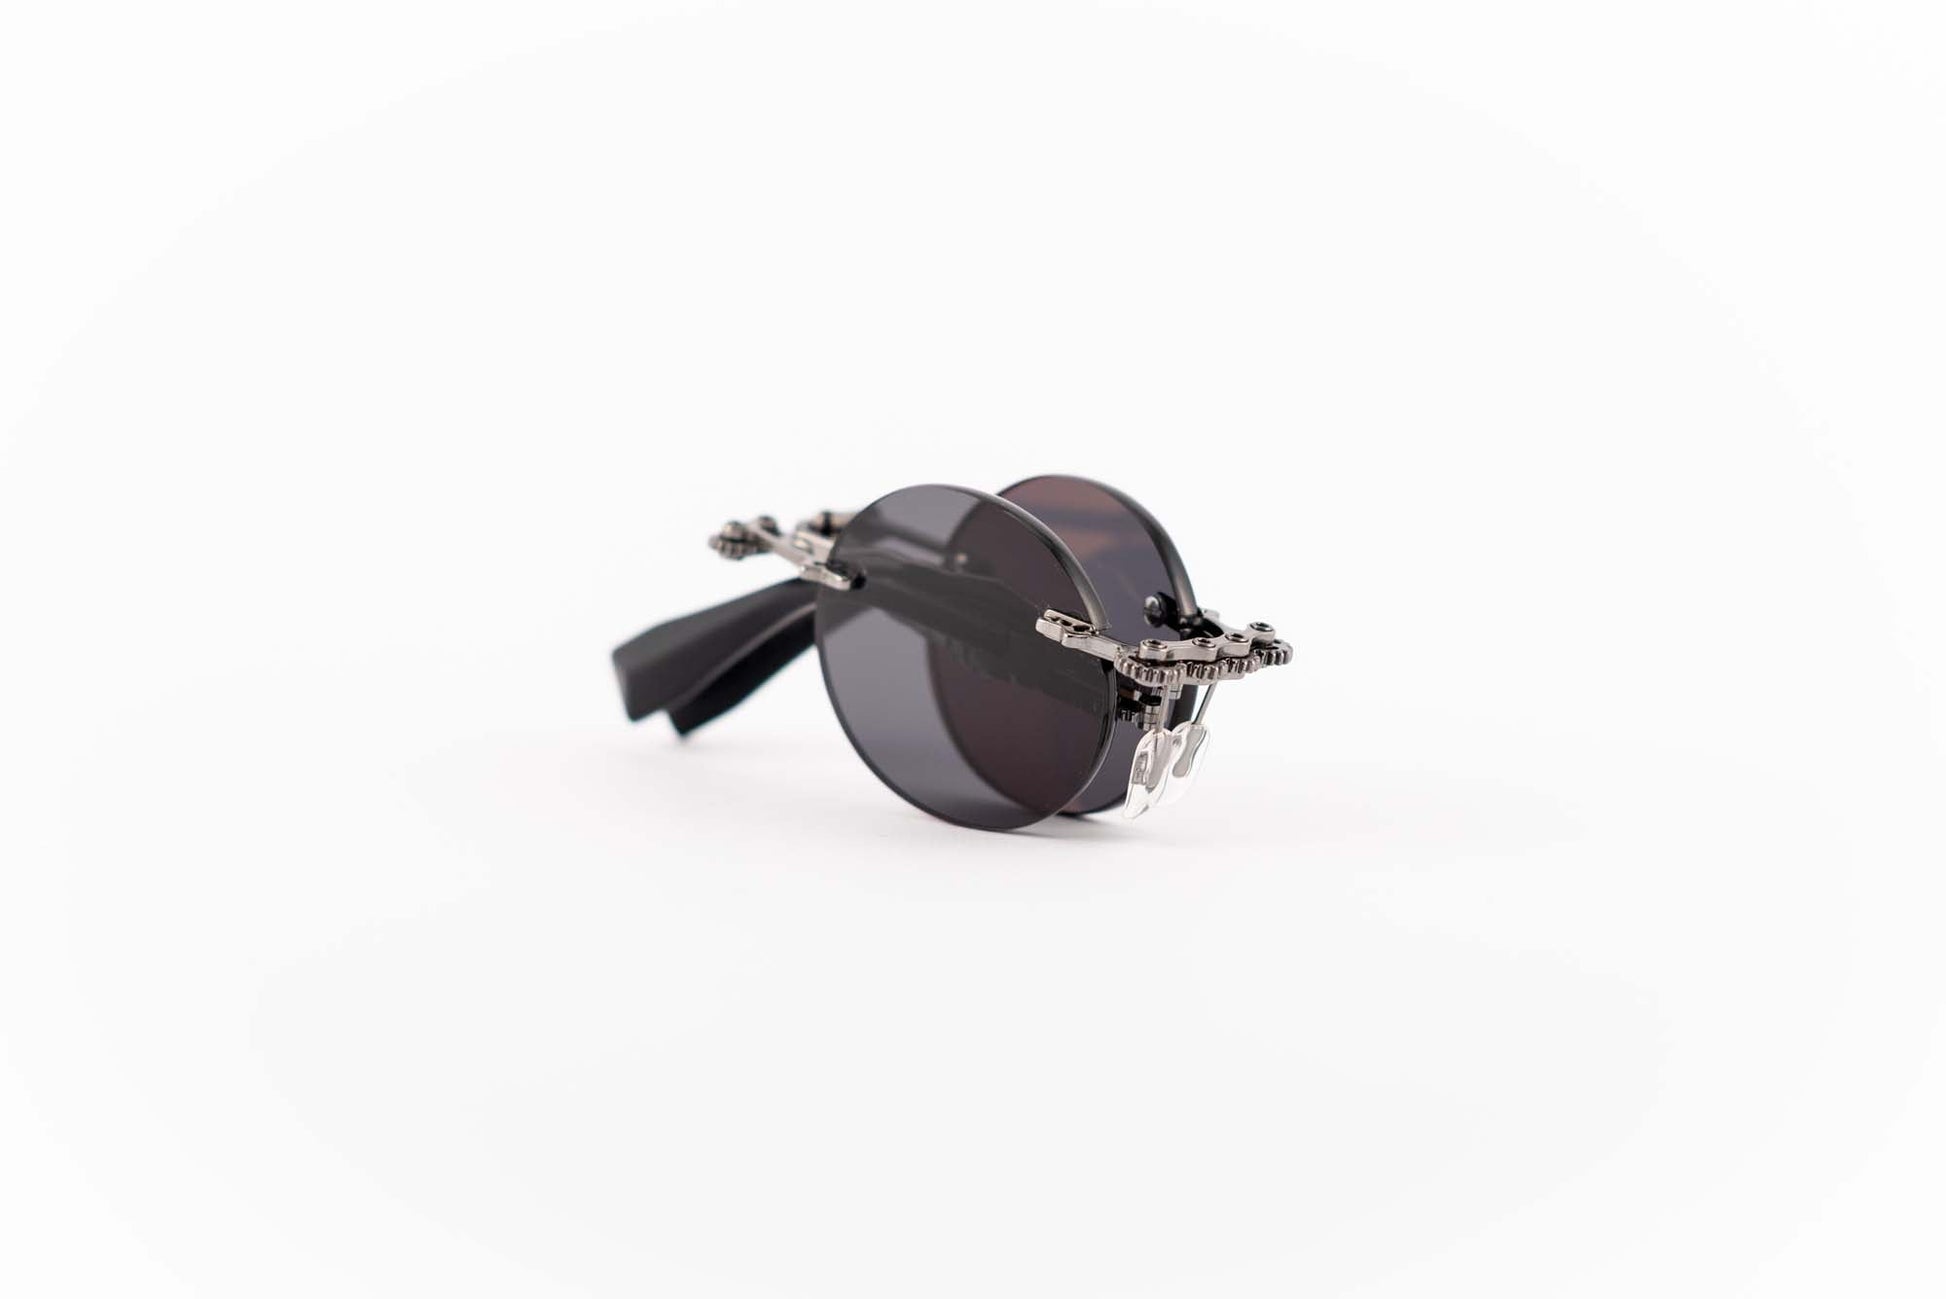 Kuboraum Occhiali da sole Nero / Metallo / Rotonda Kuboraum Maske H42 BB: occhiale a giorno glasant in metallo